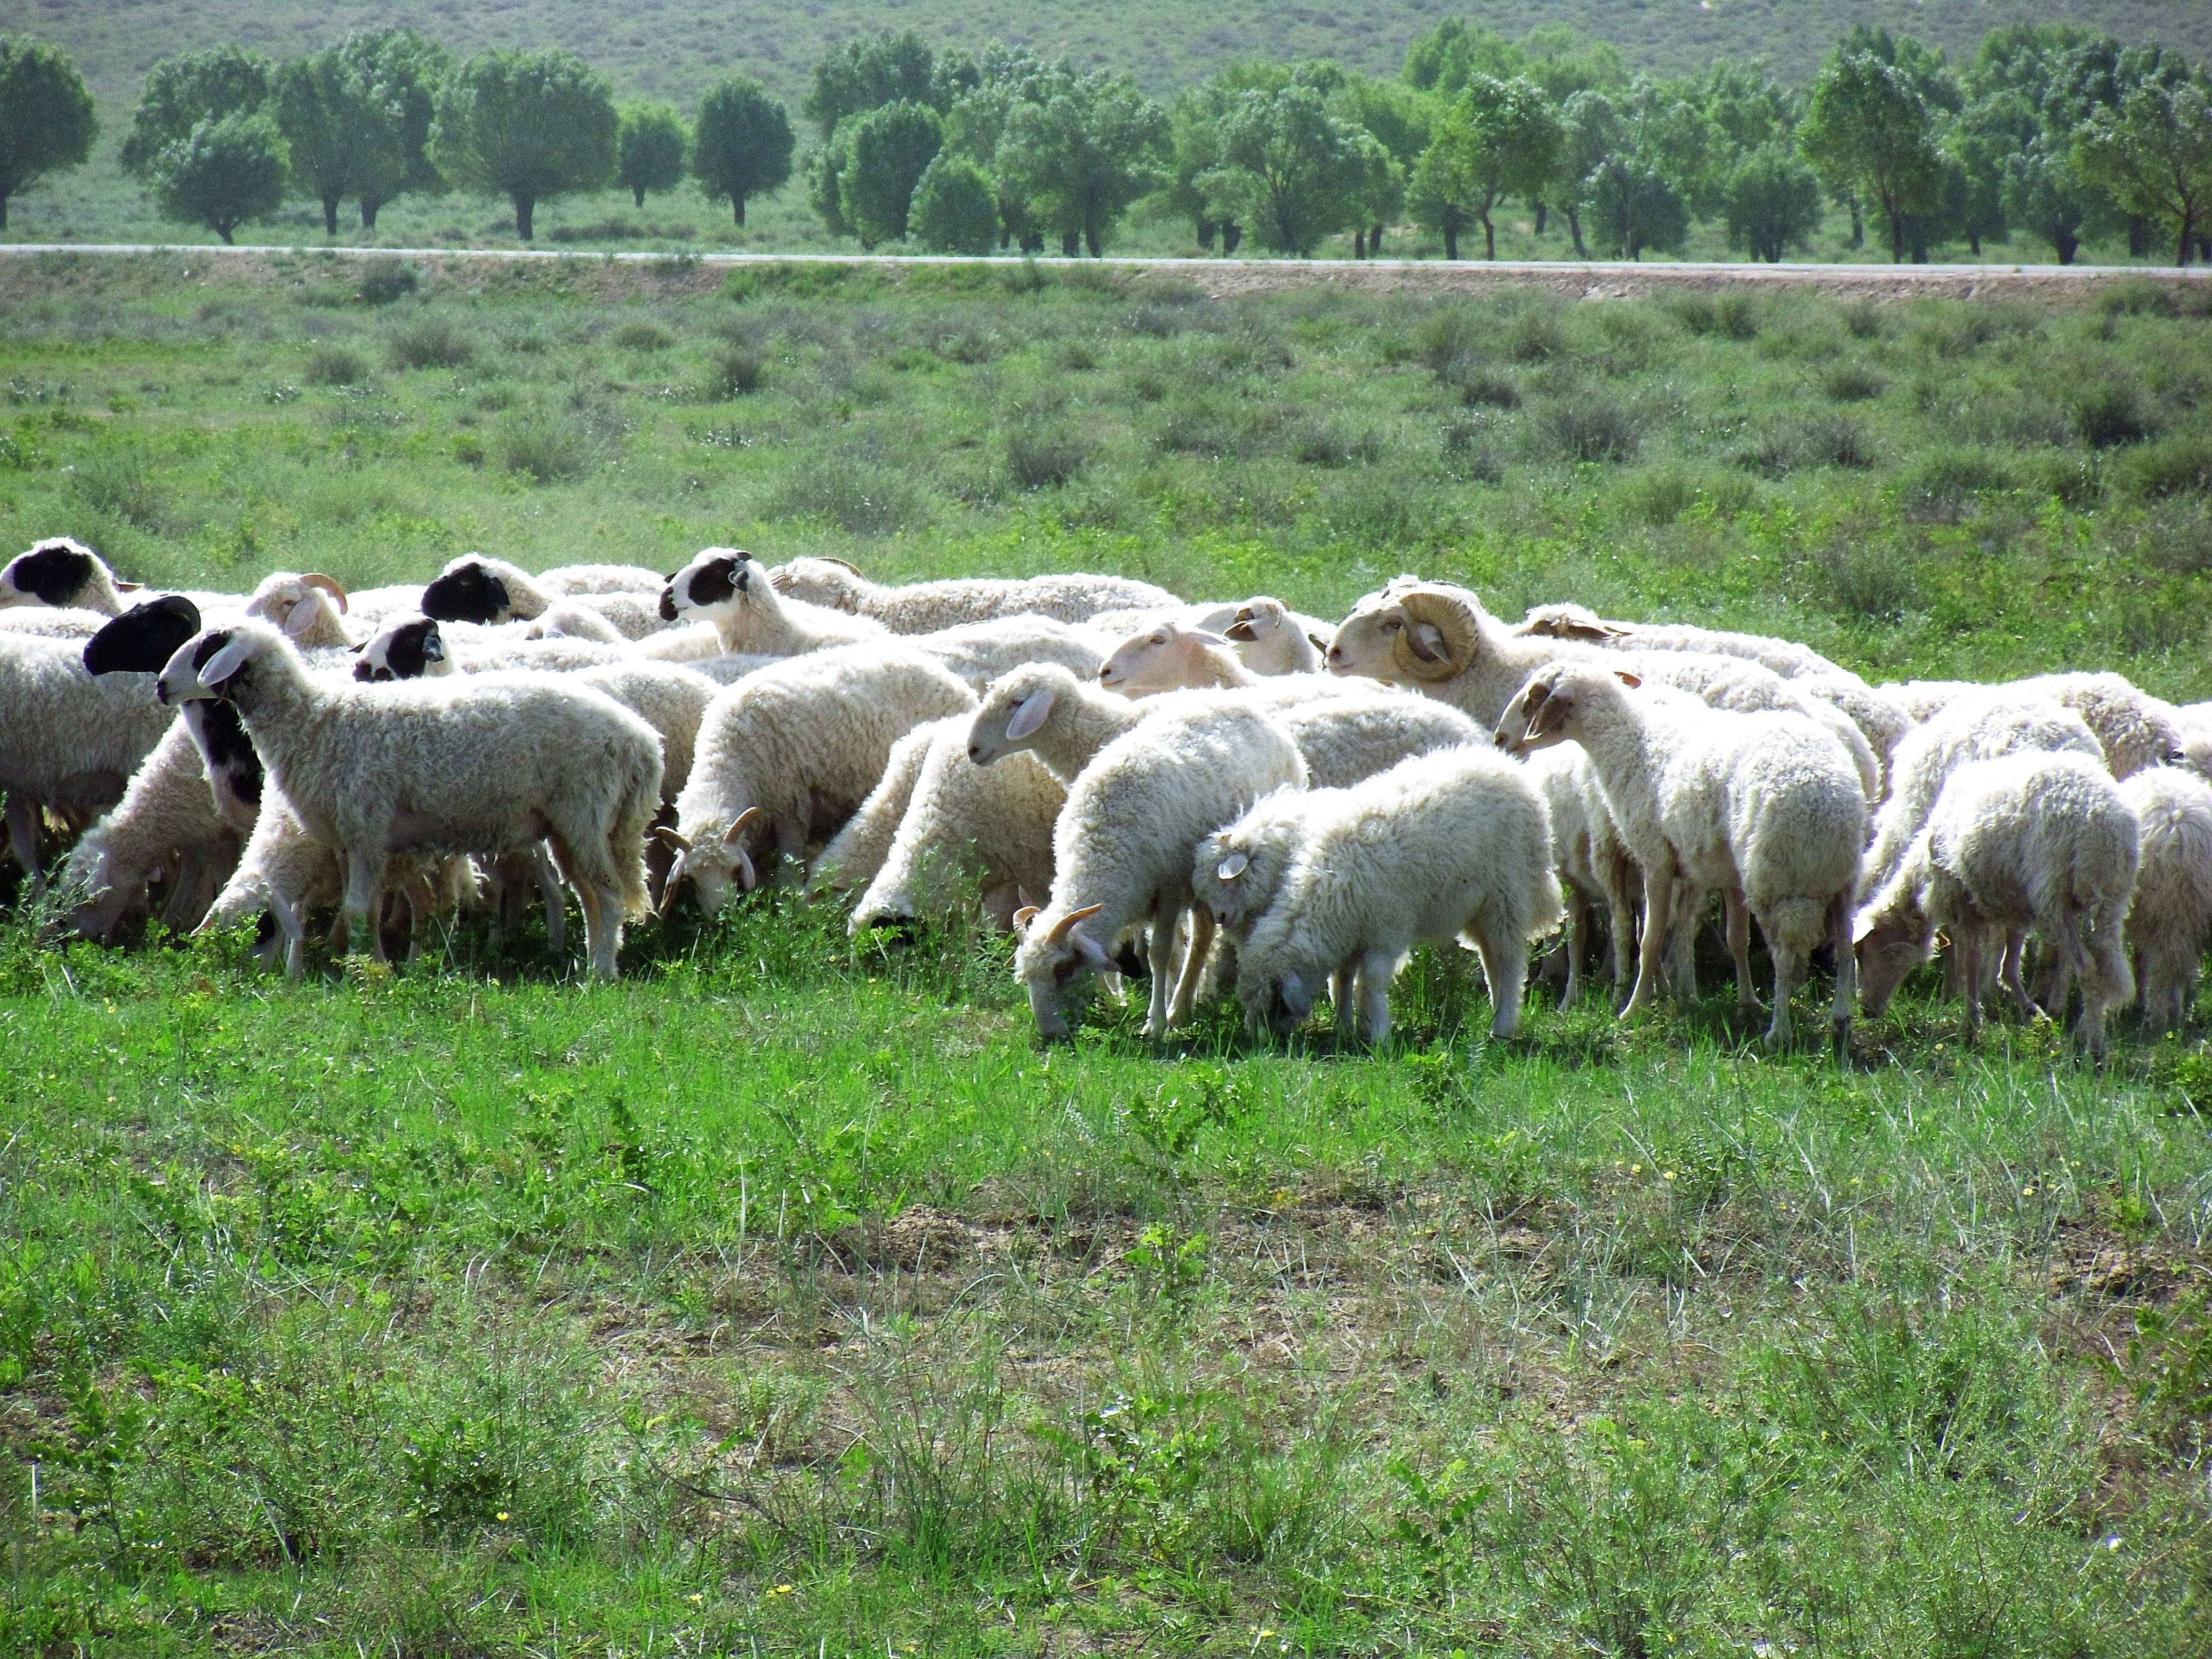 促进农民持续增收,2017年7月,盐池县政府出资1亿元成立宁夏盐池滩羊